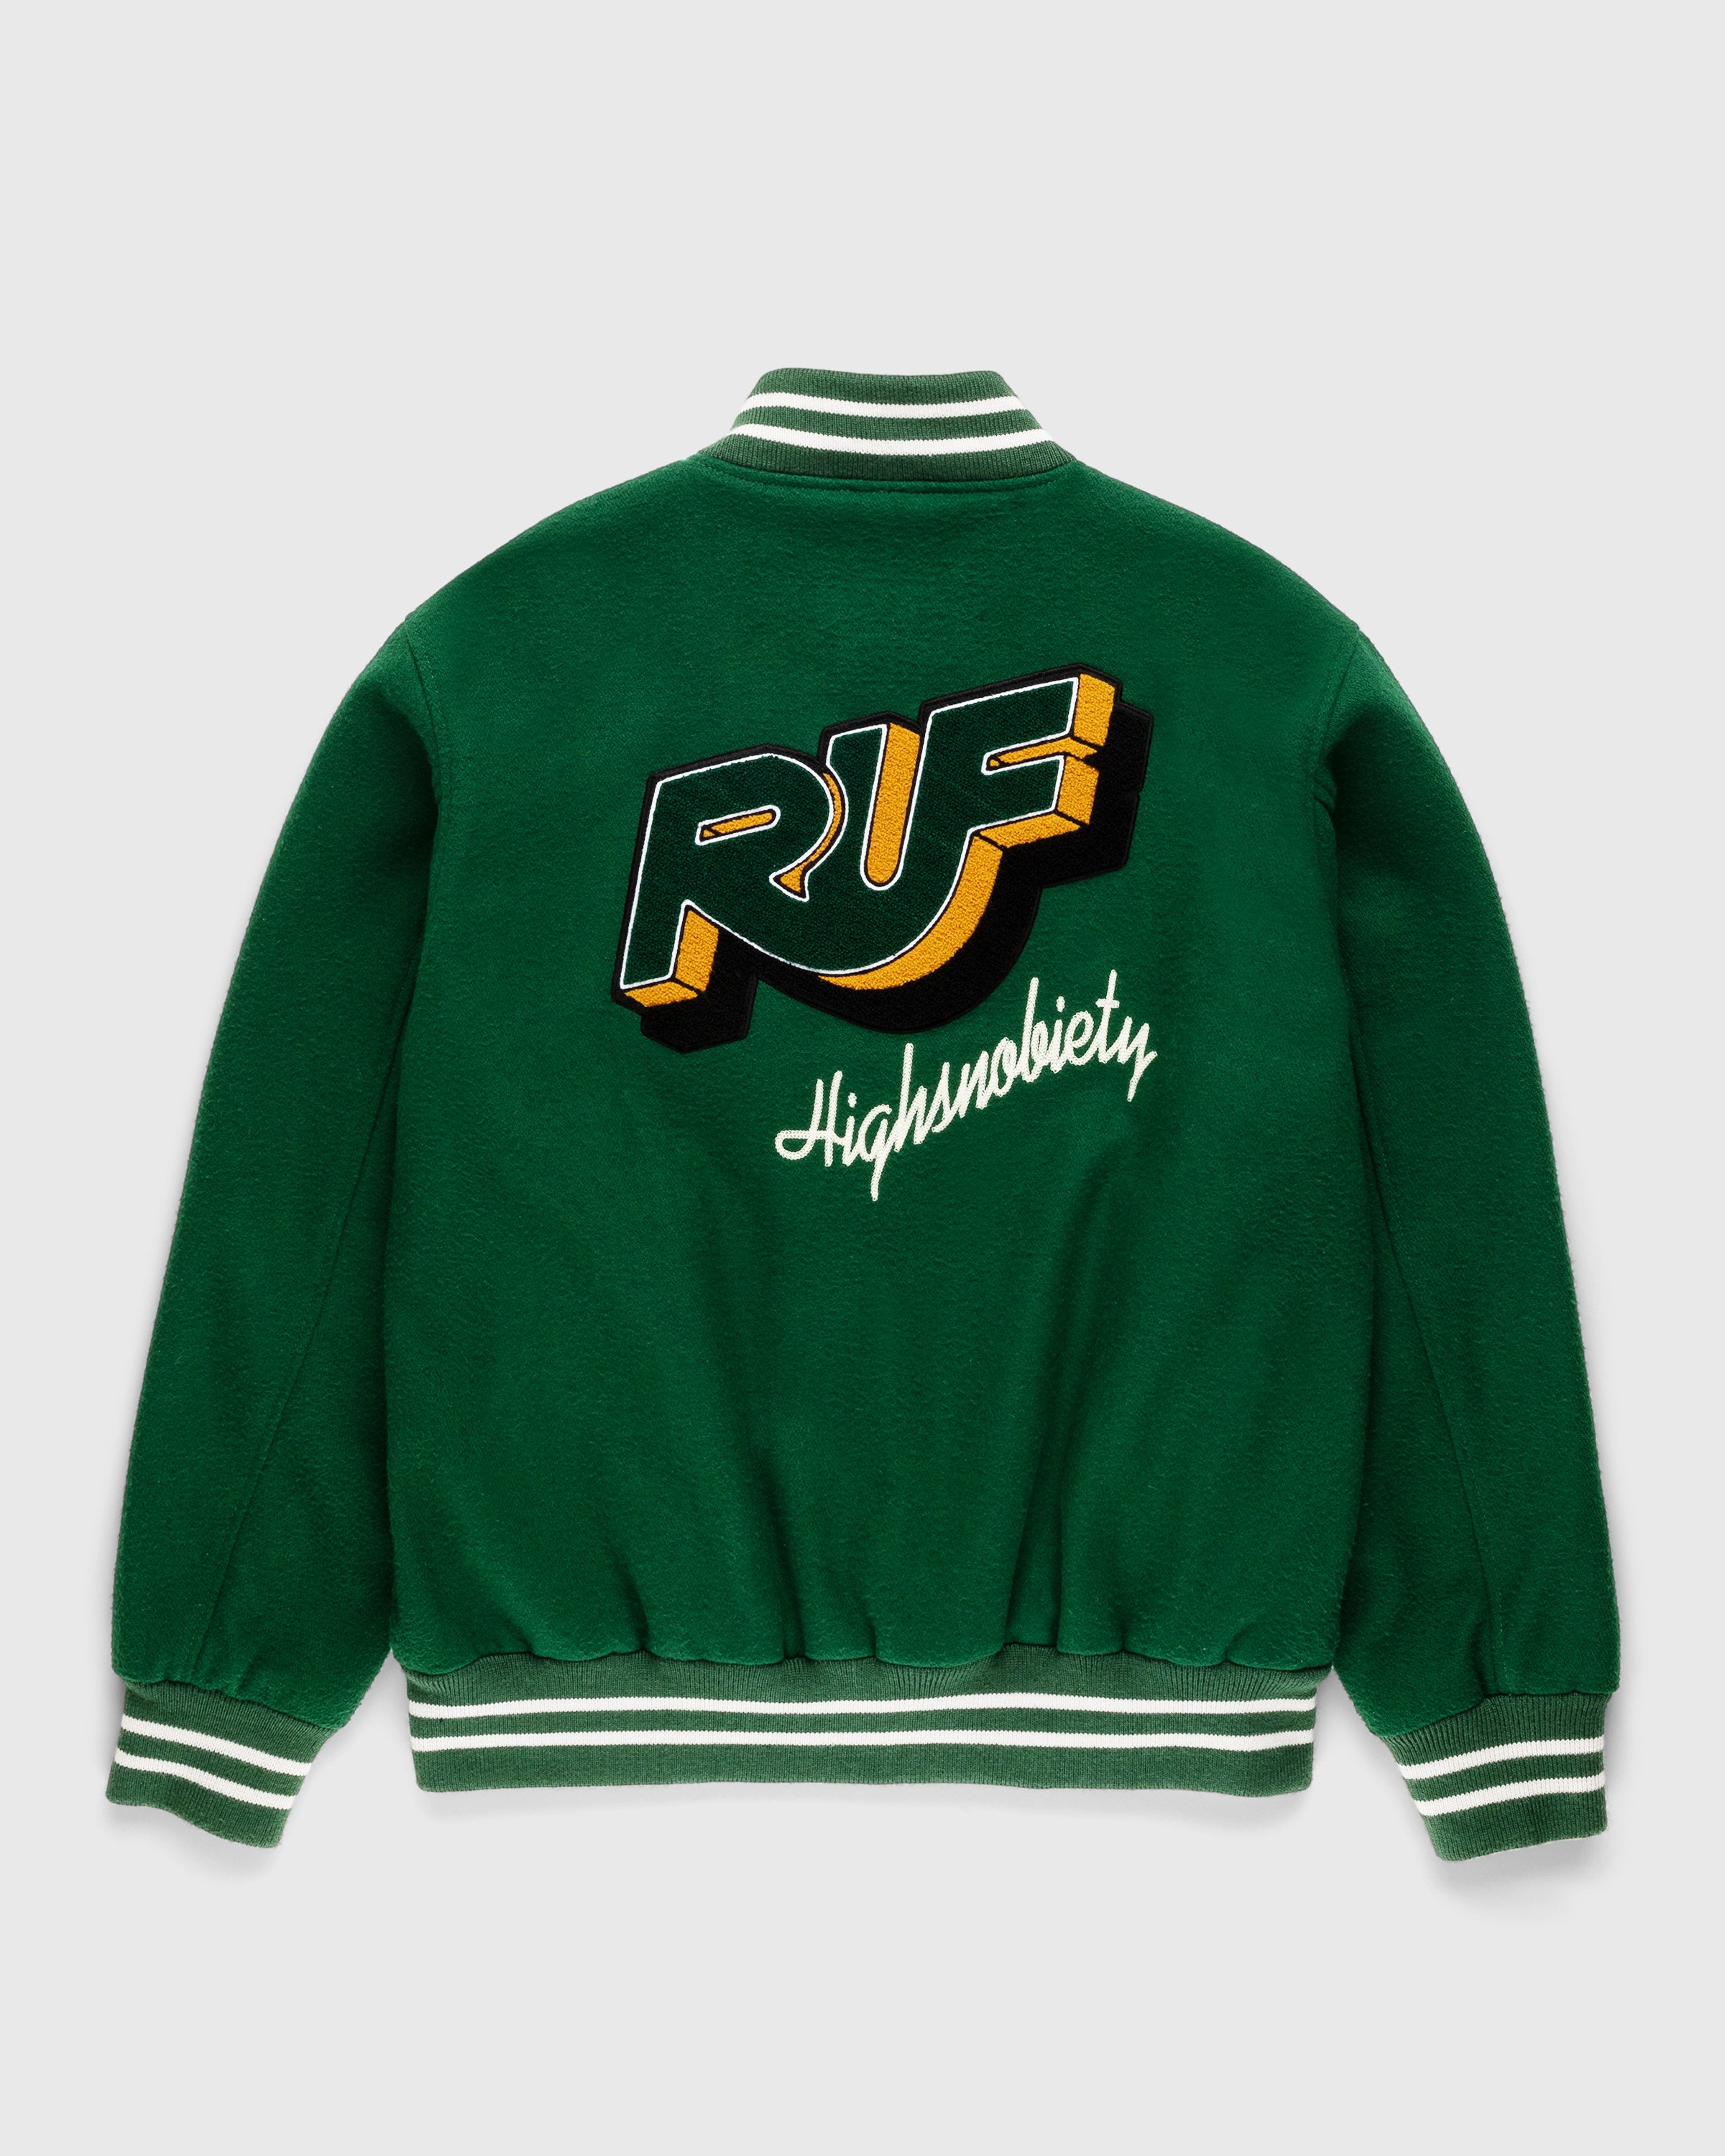 RUF x Highsnobiety - Varsity Jacket Green - Clothing - Green - Image 2